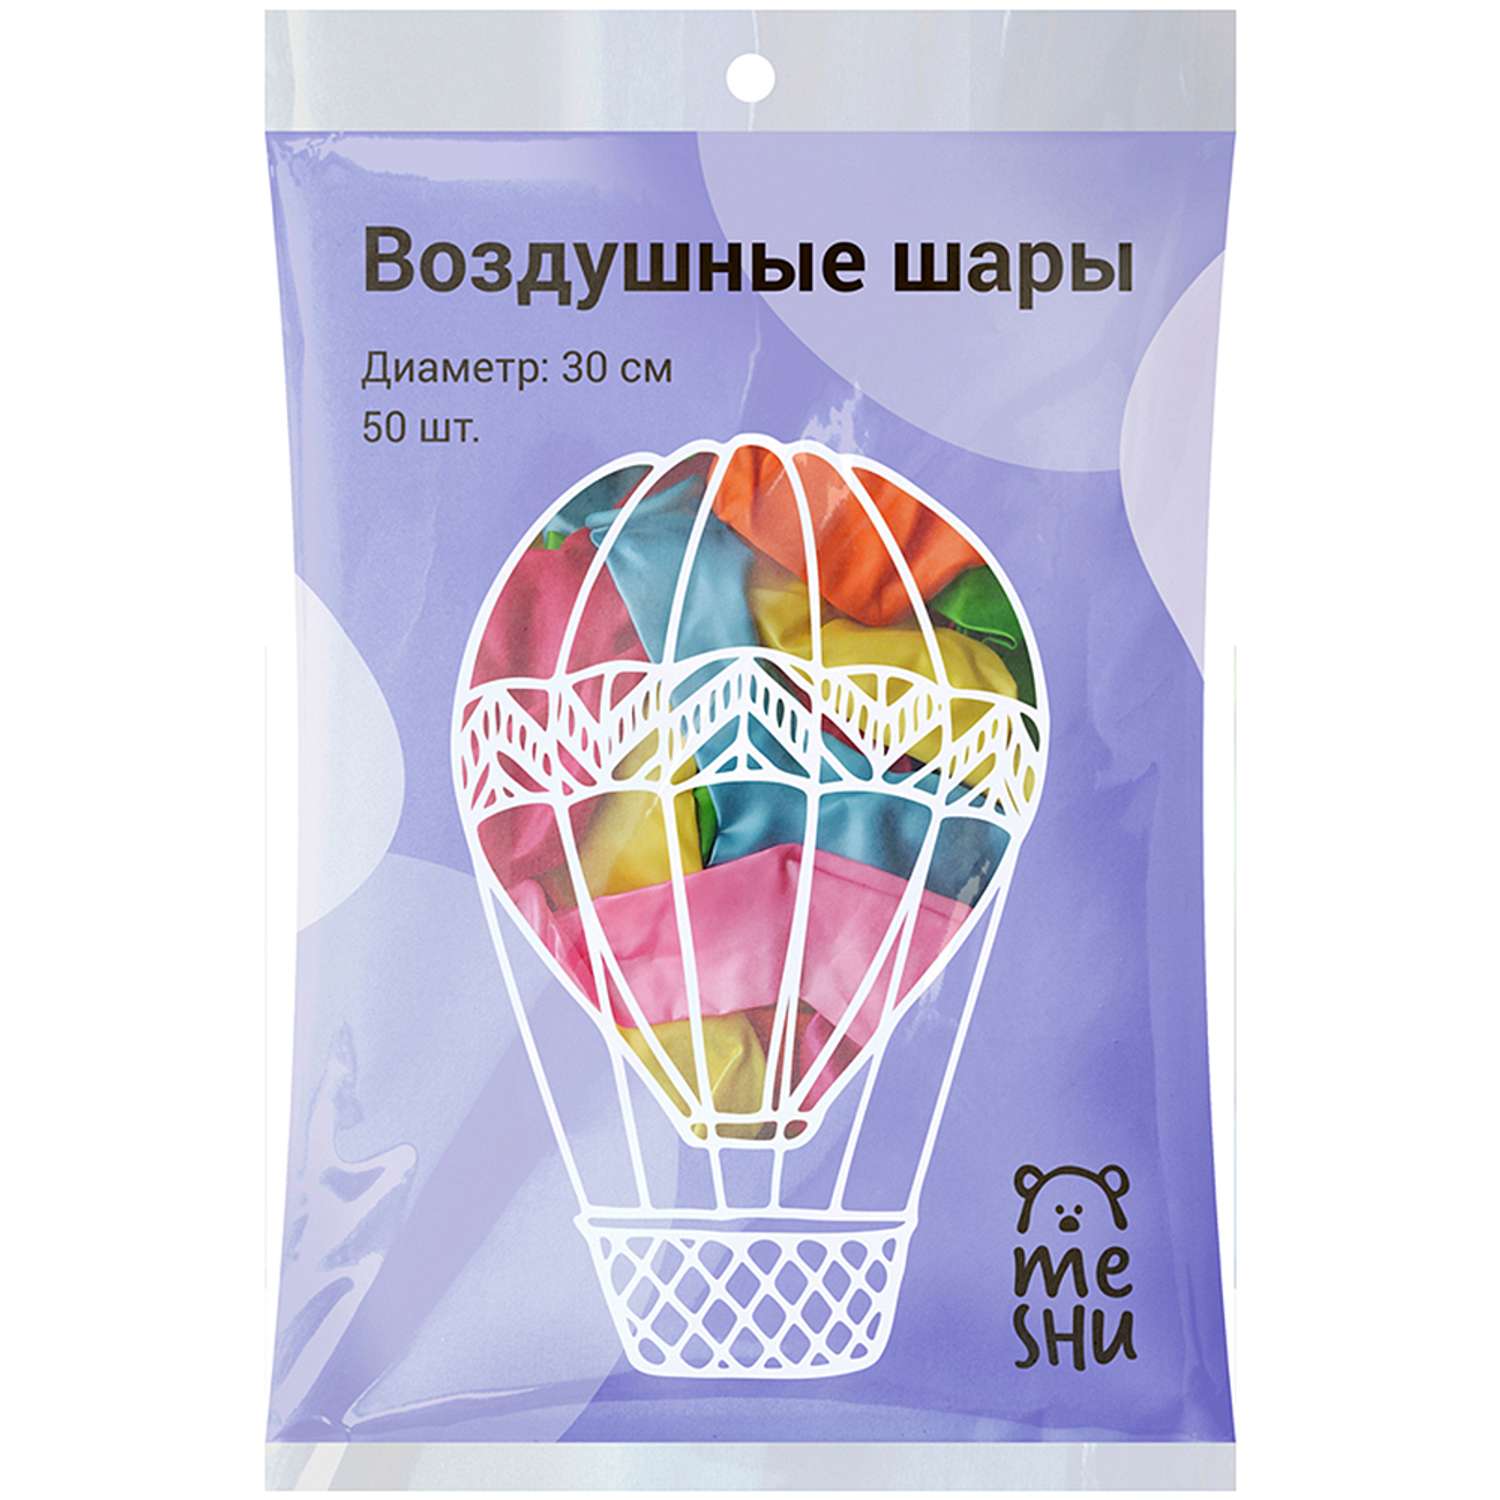 Воздушные шары Meshu металлик 10 цветов ассорти 50шт М12/30см - фото 2